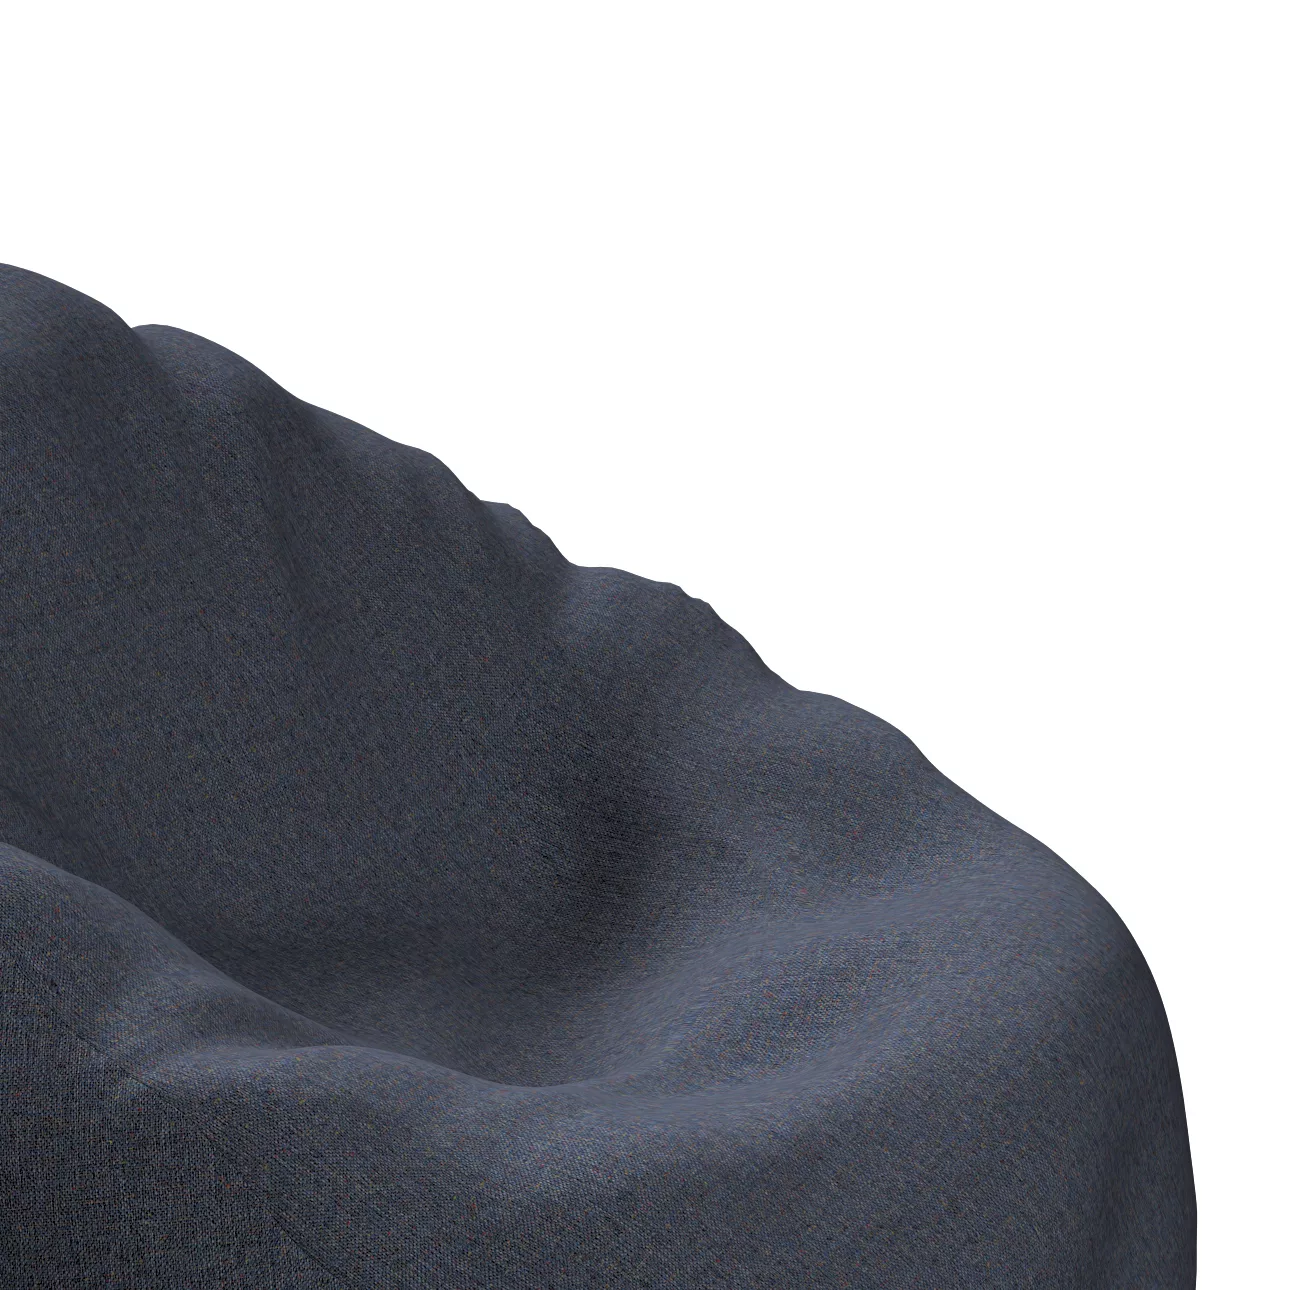 Bezug für Sitzsack, dunkelblau, Bezug für Sitzsack Ø60 x 105 cm, Madrid (16 günstig online kaufen